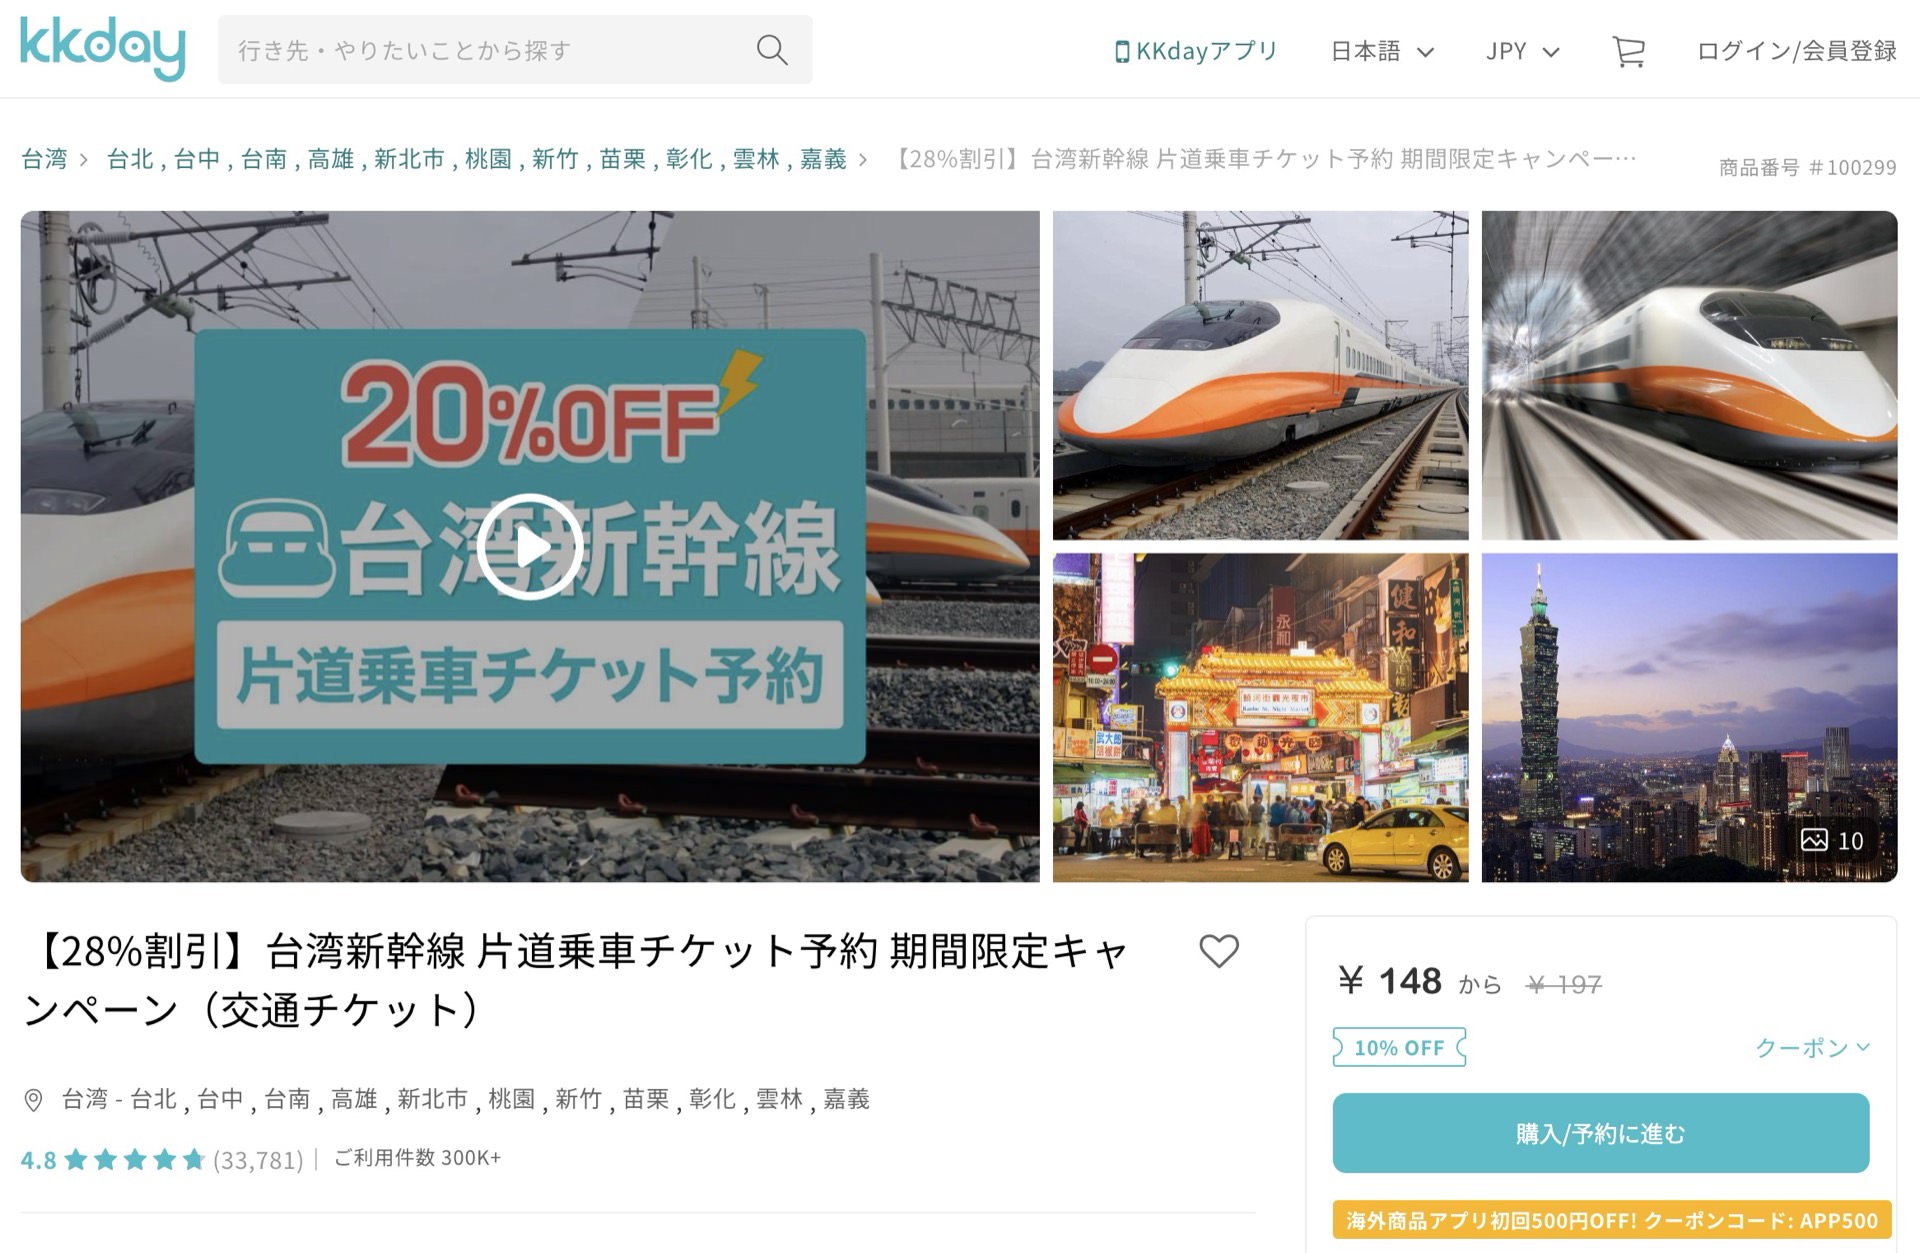 台湾新幹線の片道切符もKKdayで割引価格に